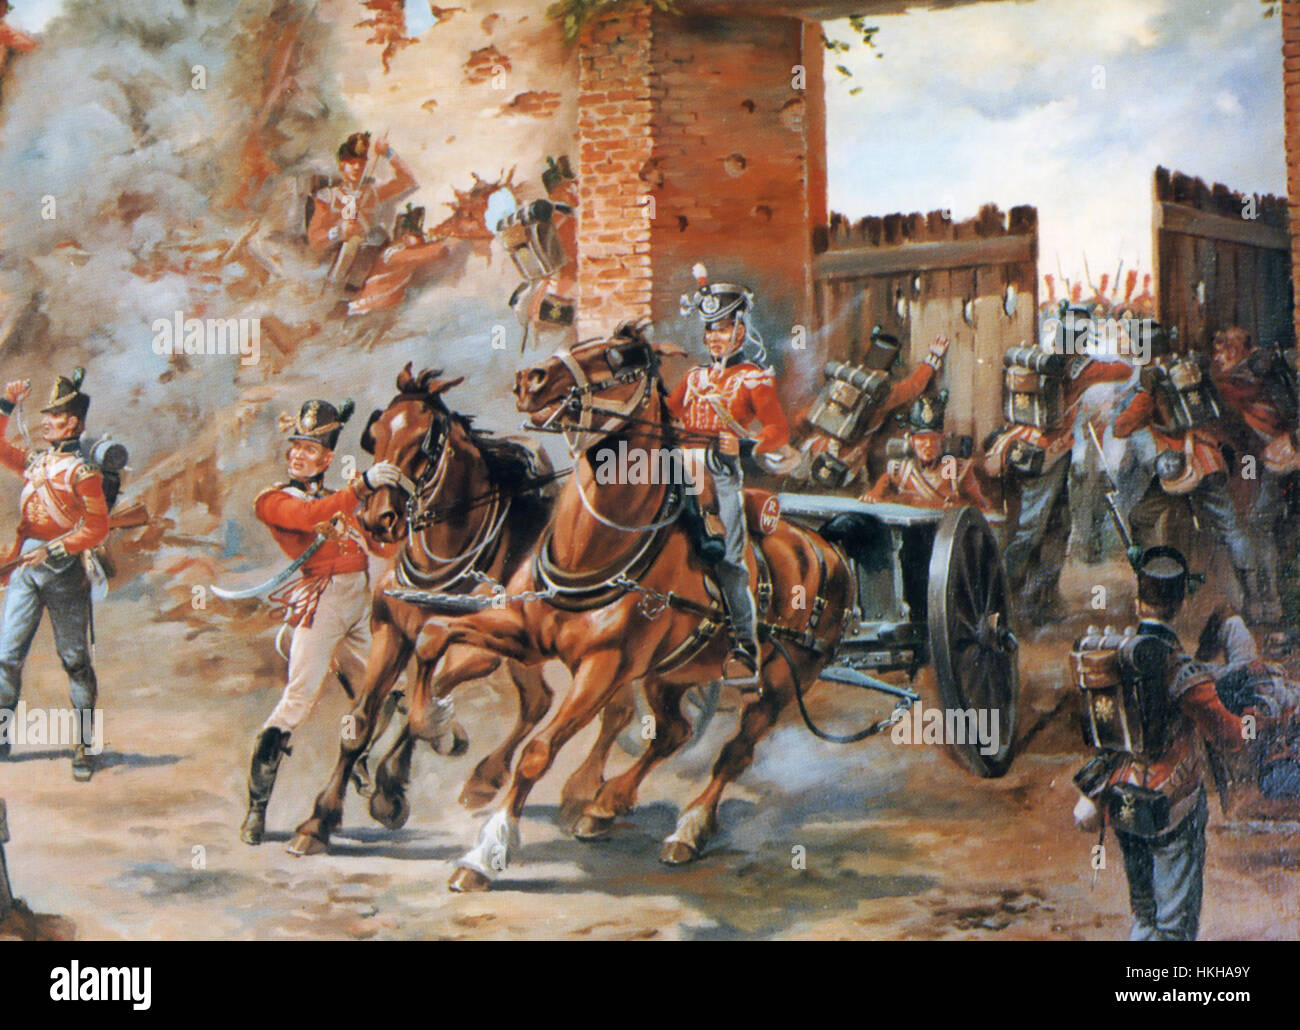 Battaglia di Waterloo la chiusura delle porte di Hougoumont 18 Giugno 1815. Artista sconosciuto Foto Stock